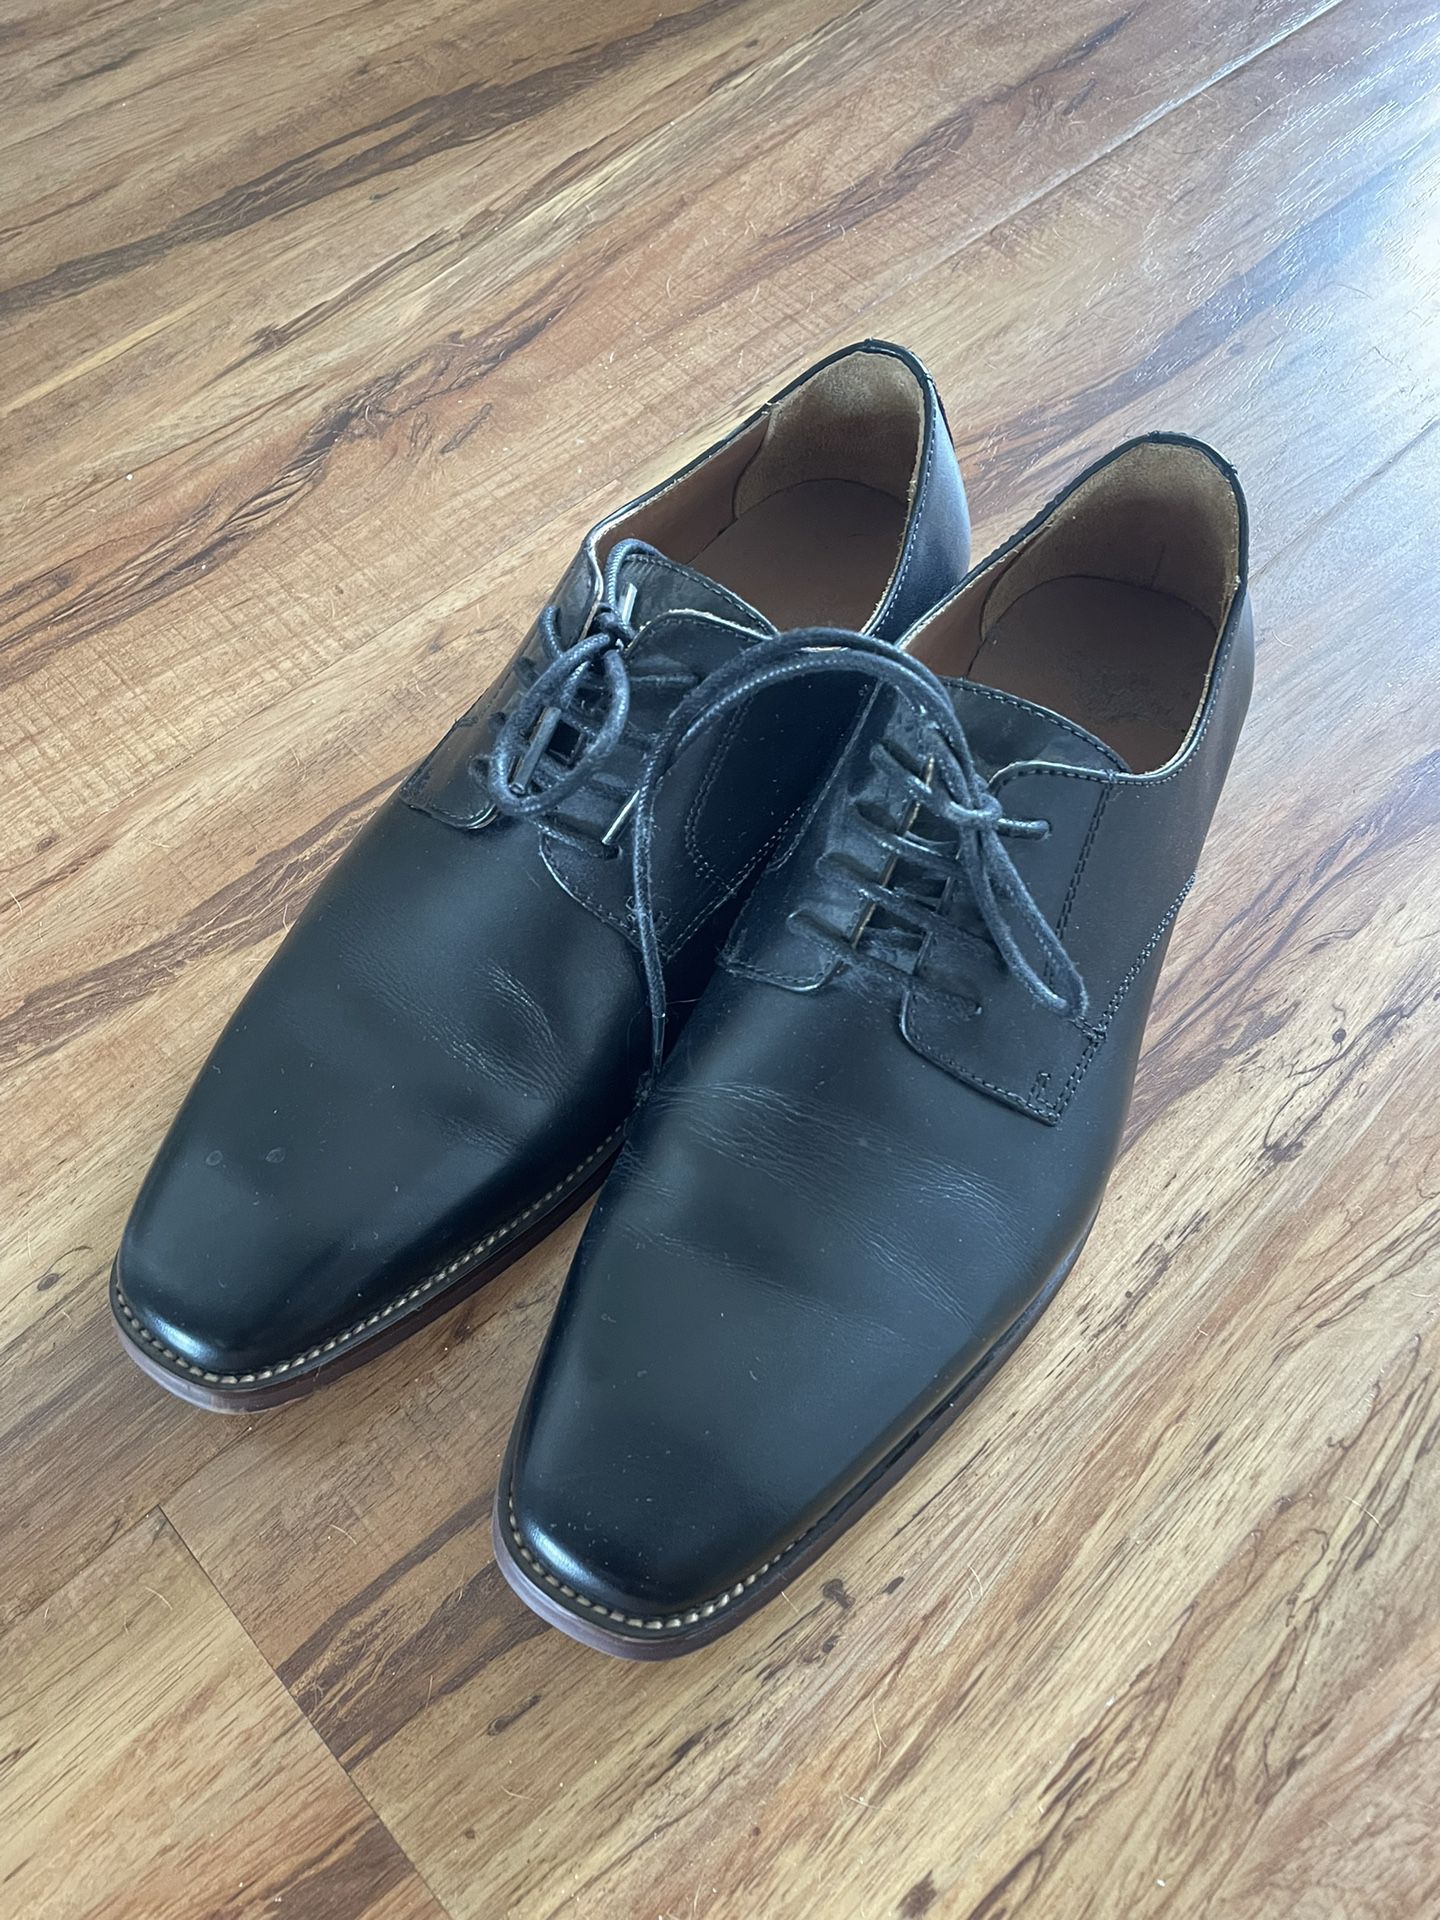 Men’s Black Dress Shoes - Size 8.5